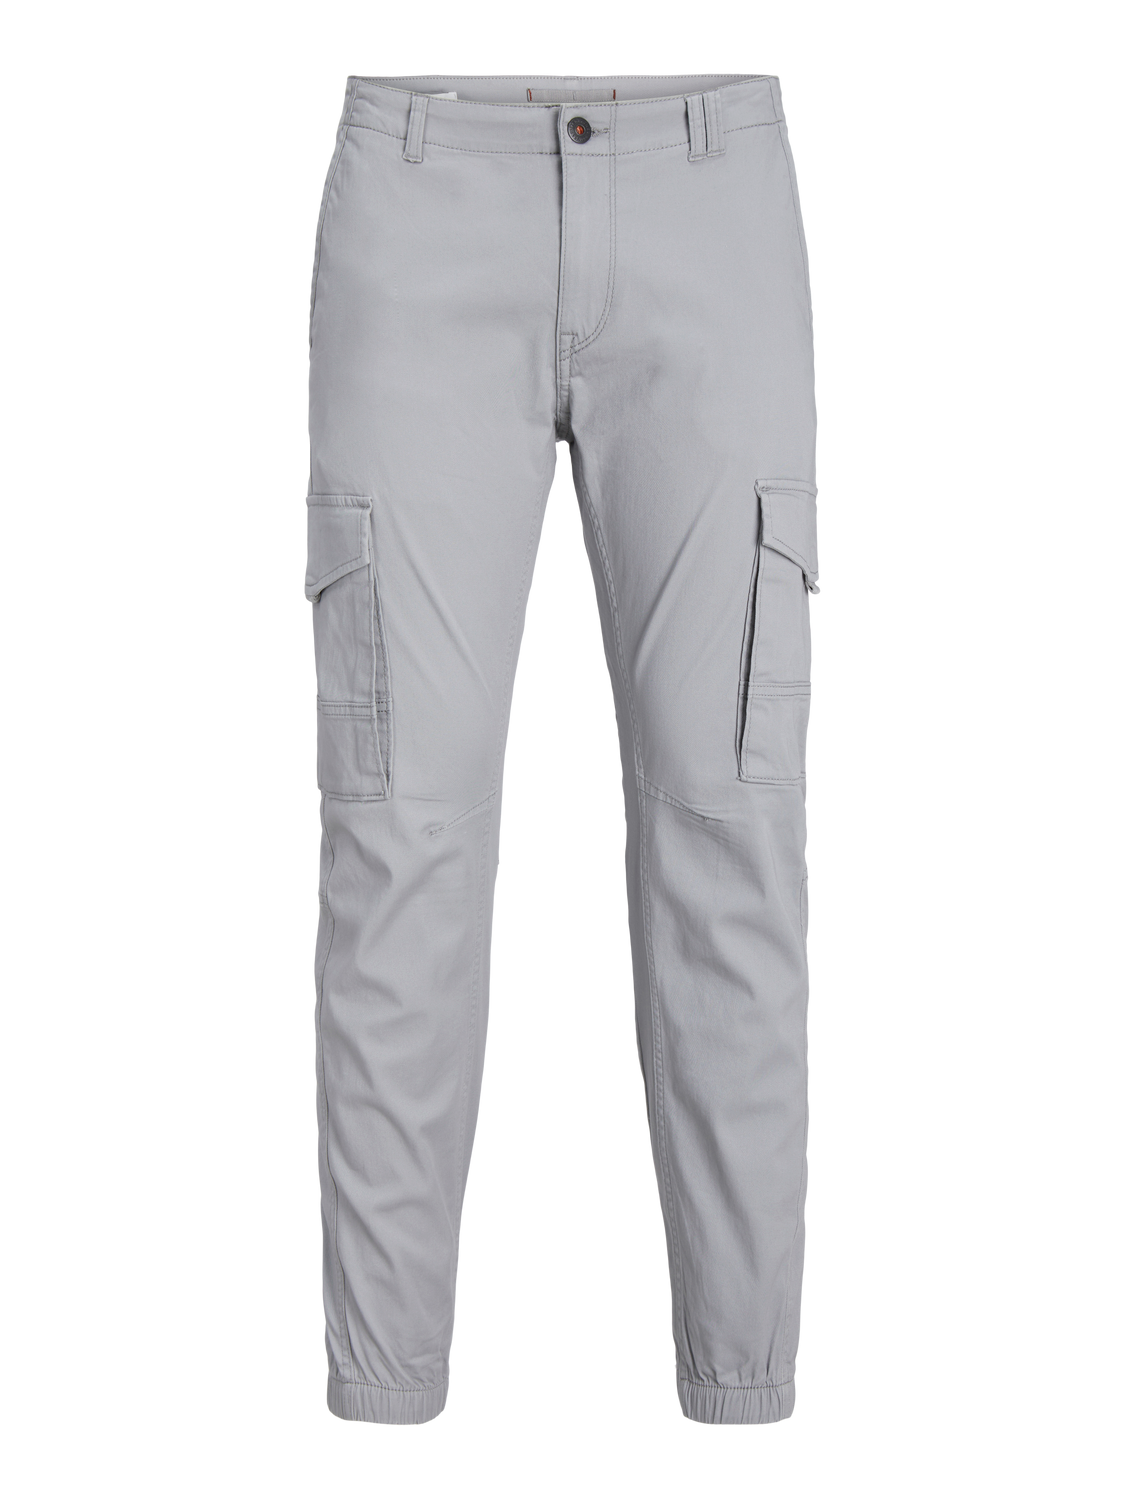 JPSTPAUL Pants - Ultimate Grey